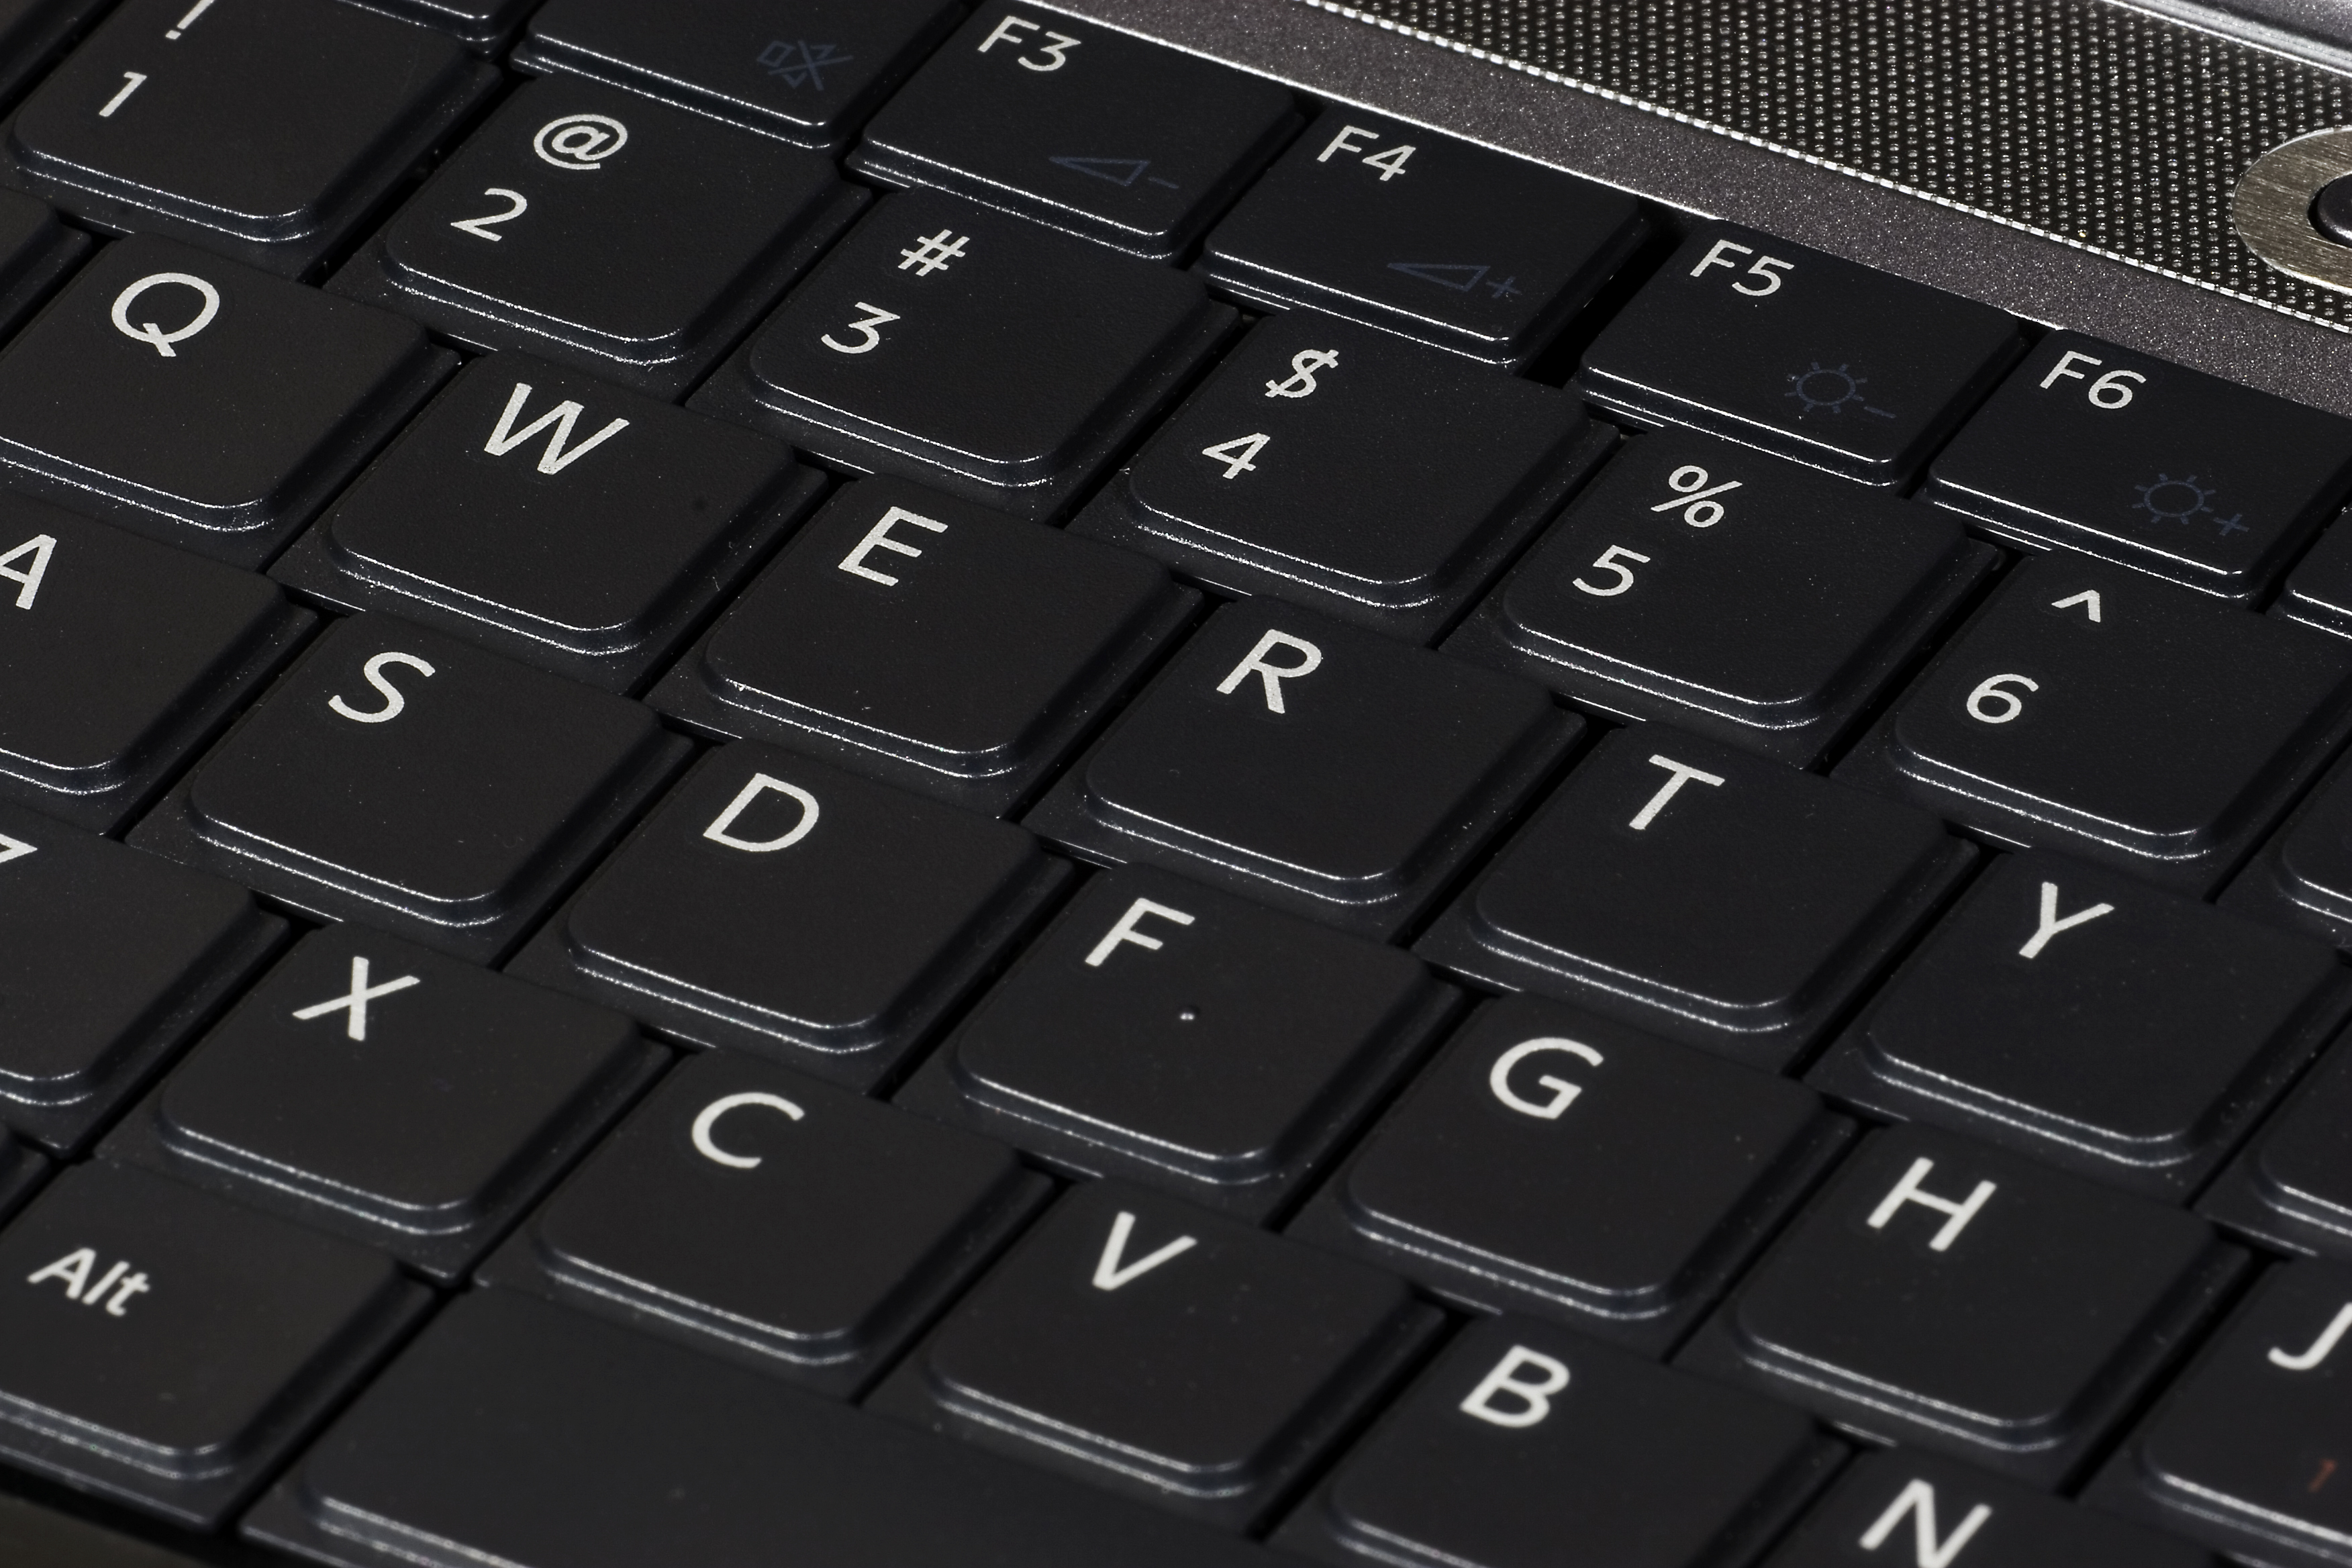 Wees tevreden B.C. klasse Een goed toetsenbord kiezen, hoe doe ik dat? – ComputerGeek.nl